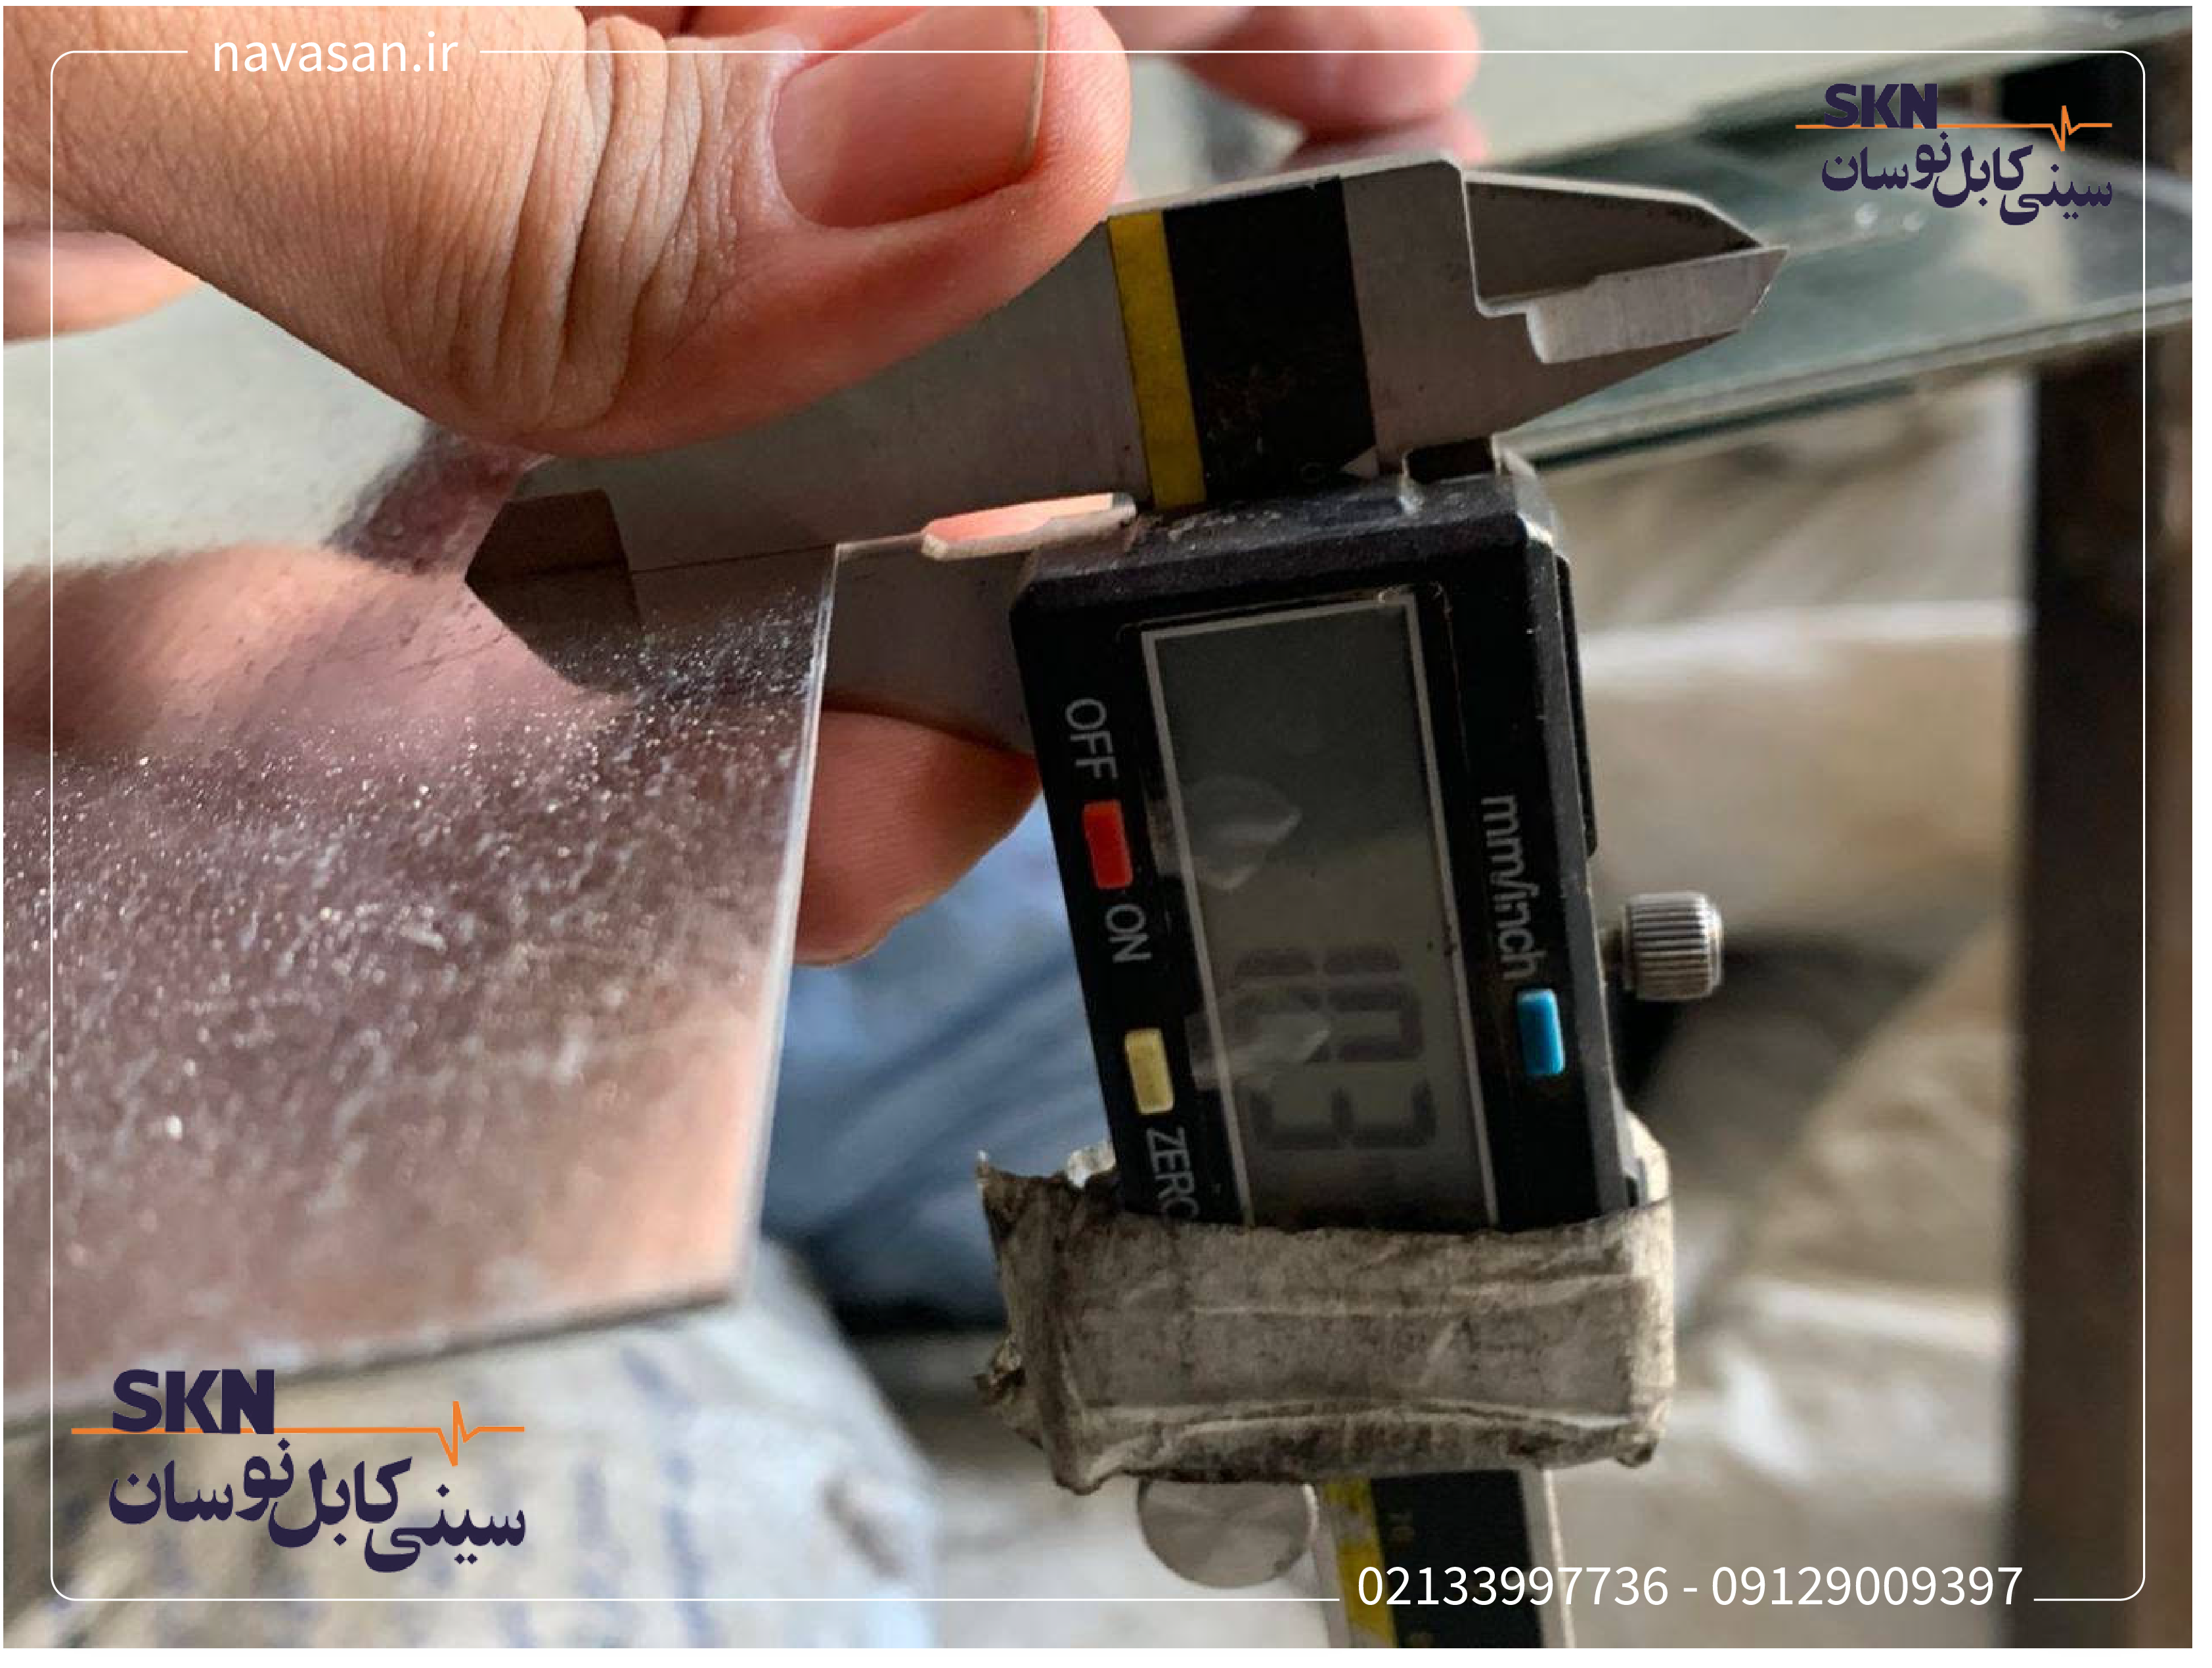 مردی اندازه گیری ضخامت ورق سینی کابل را توسط میکرومتر/ کولیس انجام میدهدکه دستگاه کولیس و ورق سینی کابل در تصویر مشخص است.